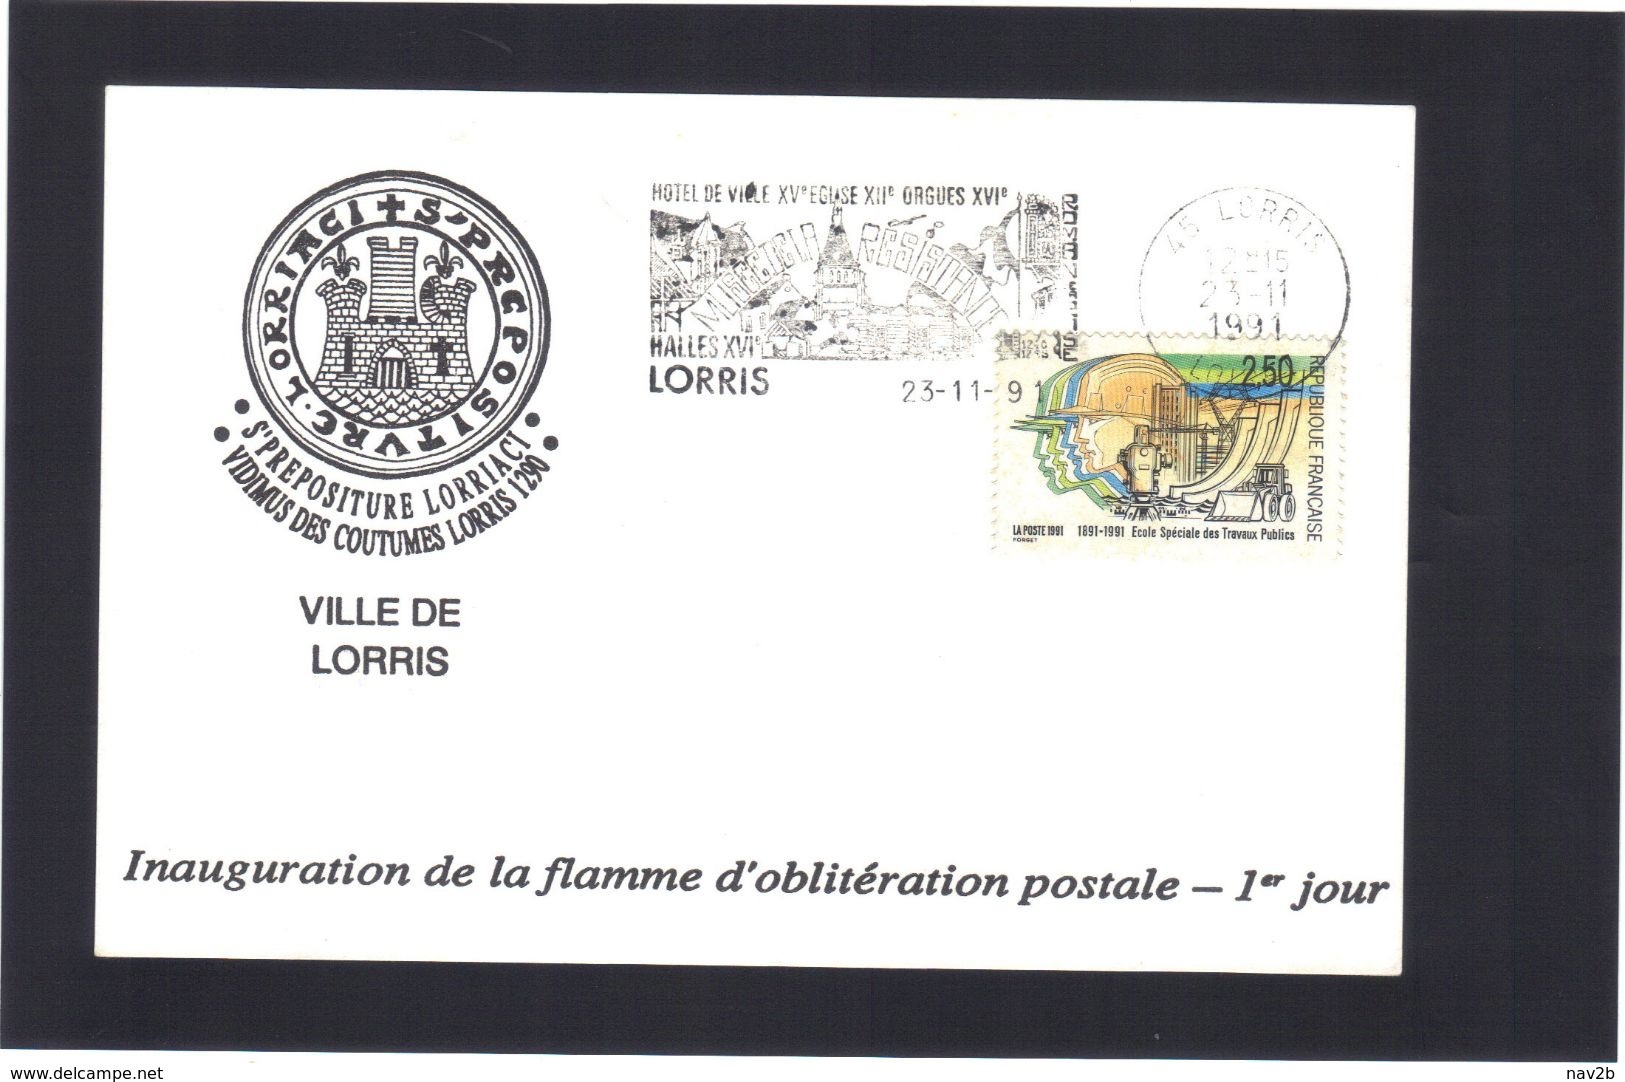 Inauguration De La Flamme D'oblitération Postale . 1° Jour .  VILLE DE LORRIS .  Loiret . - Maschinenstempel (Werbestempel)